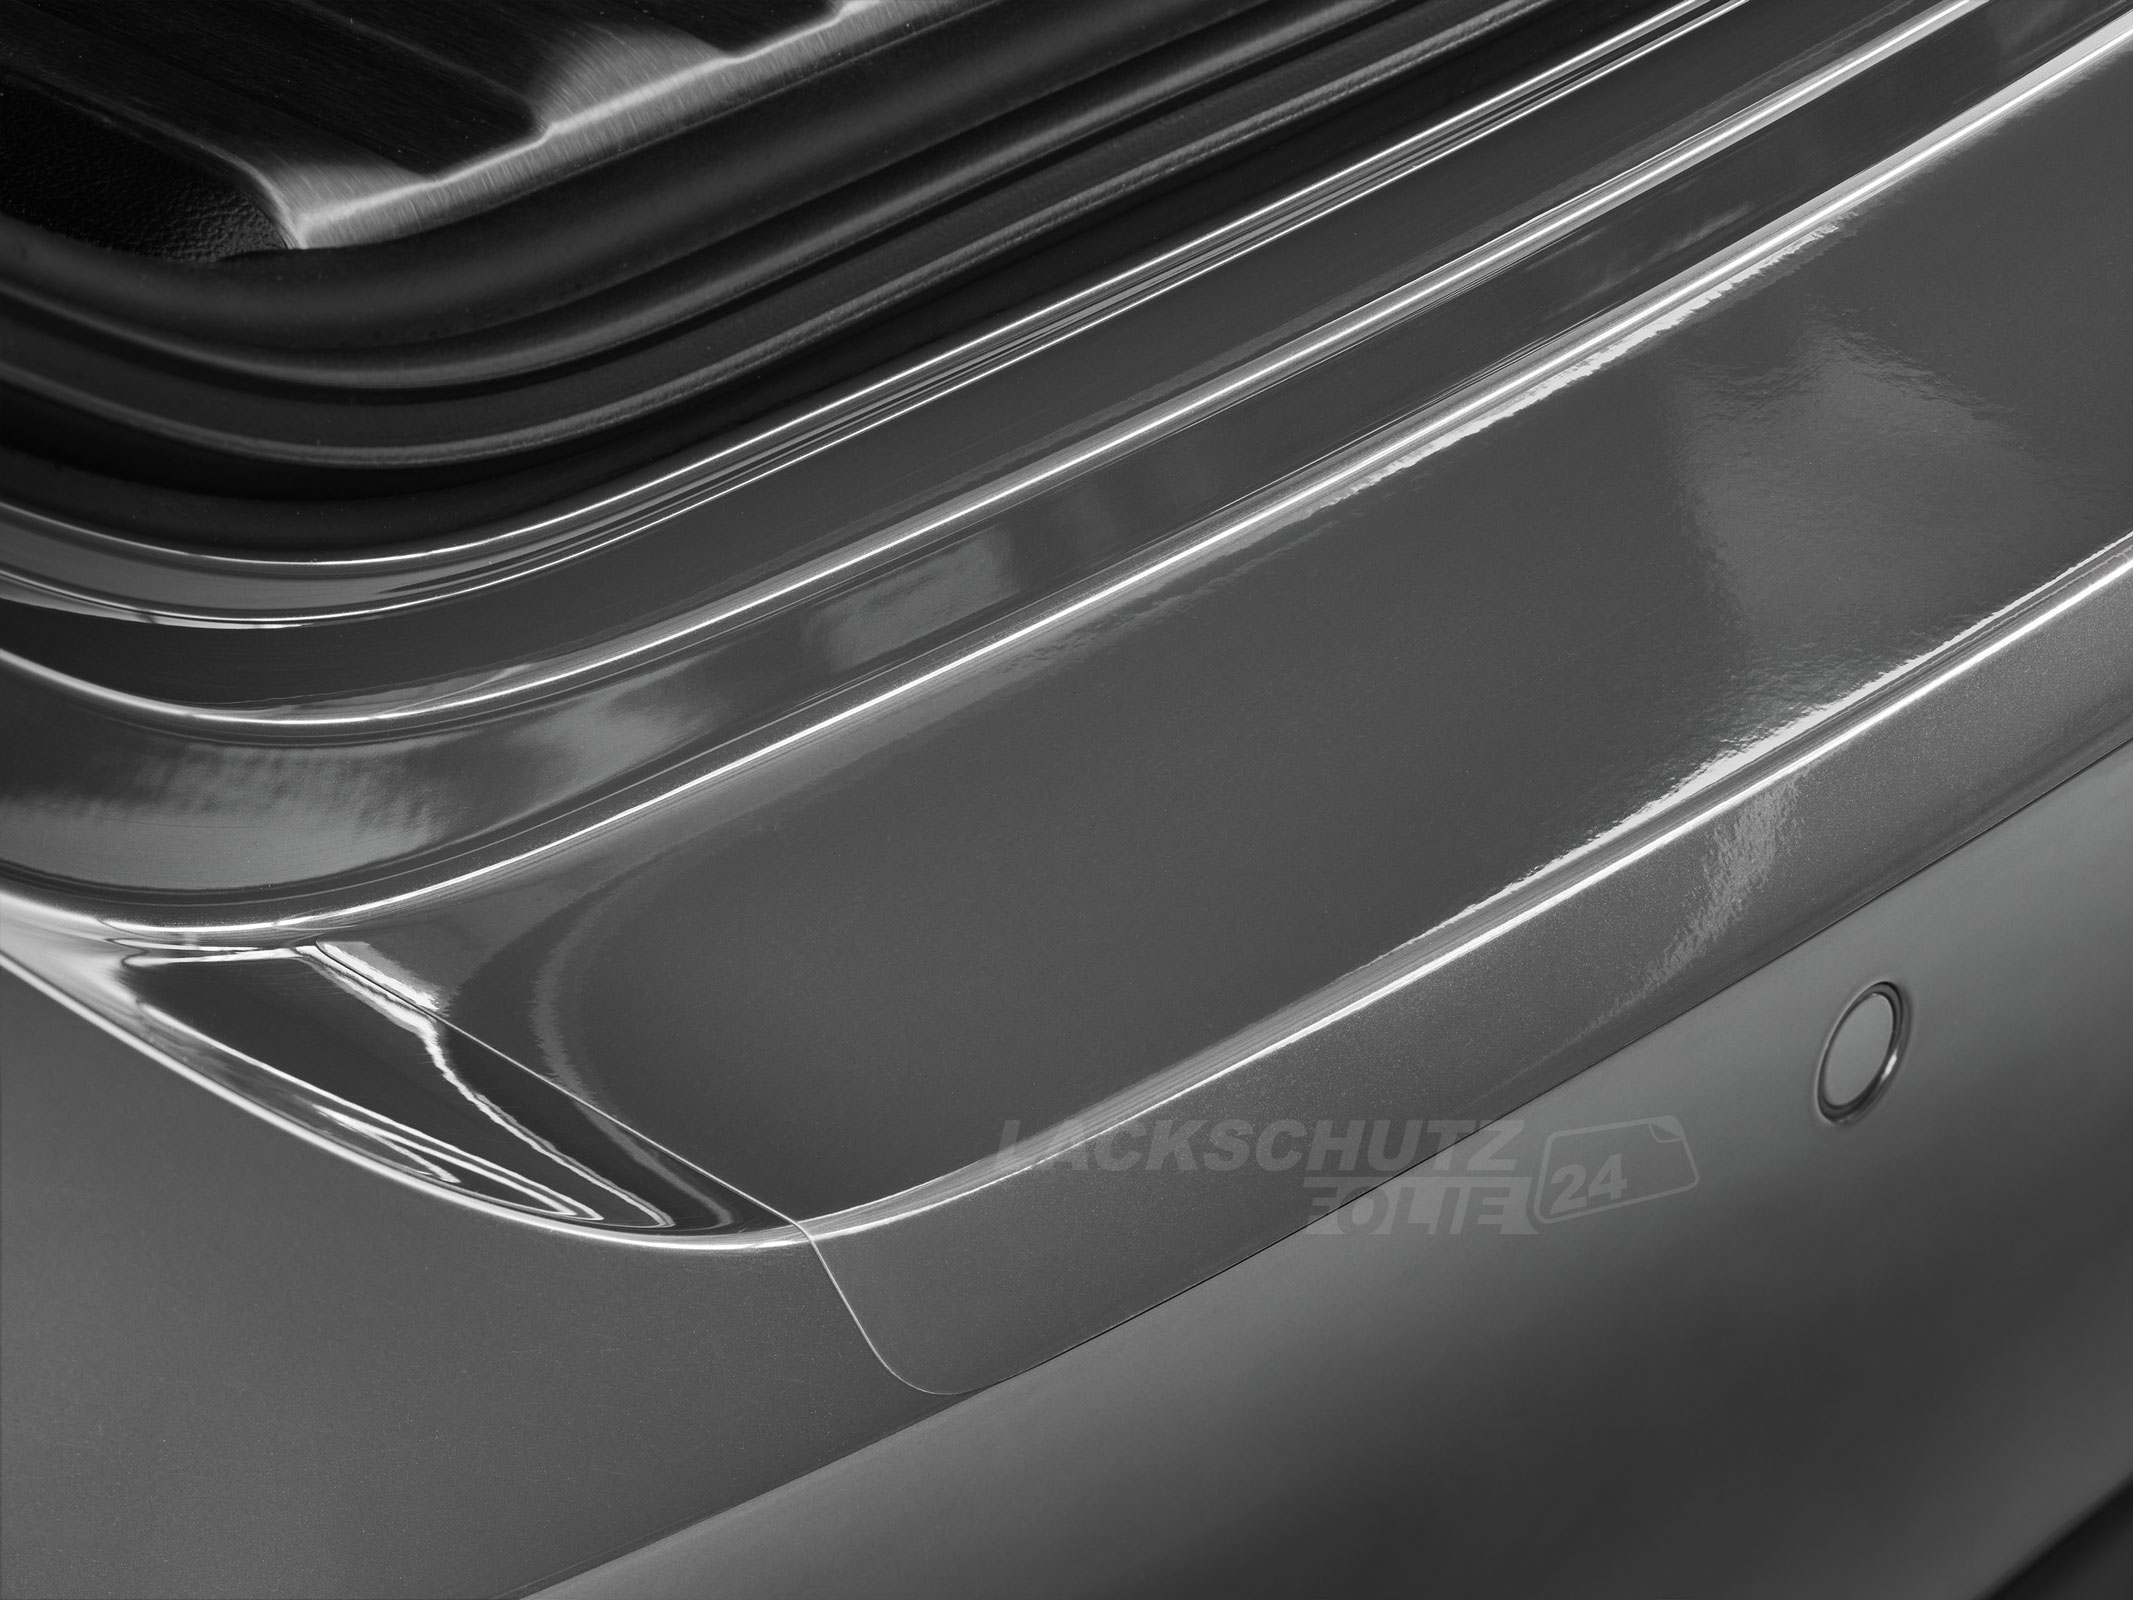 Ladekantenschutzfolie - Transparent Glatt Hochglänzend für Audi A3 Sportback Typ 8PA, Facelift, BJ 2008-02/2013